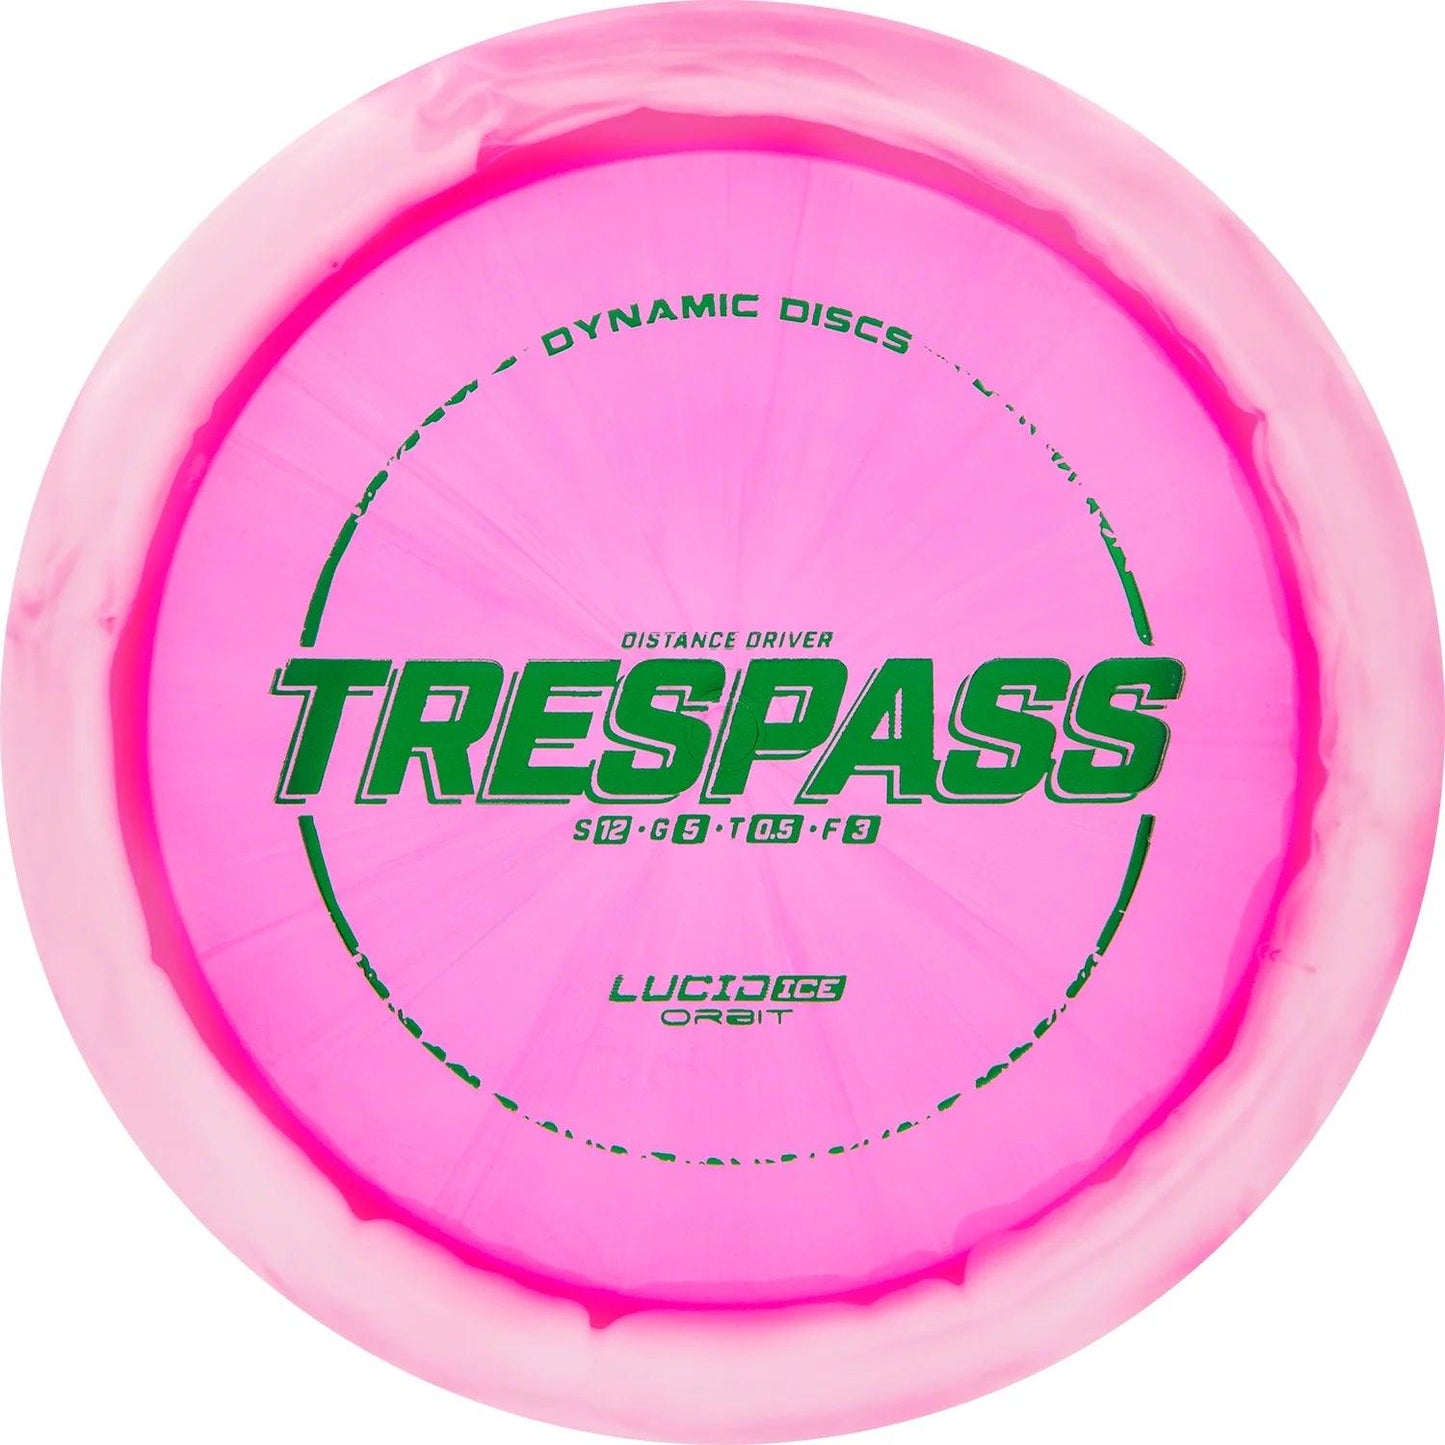 Dynamic Discs Lucid Ice Orbit Trespass - Disc Golf Deals USA